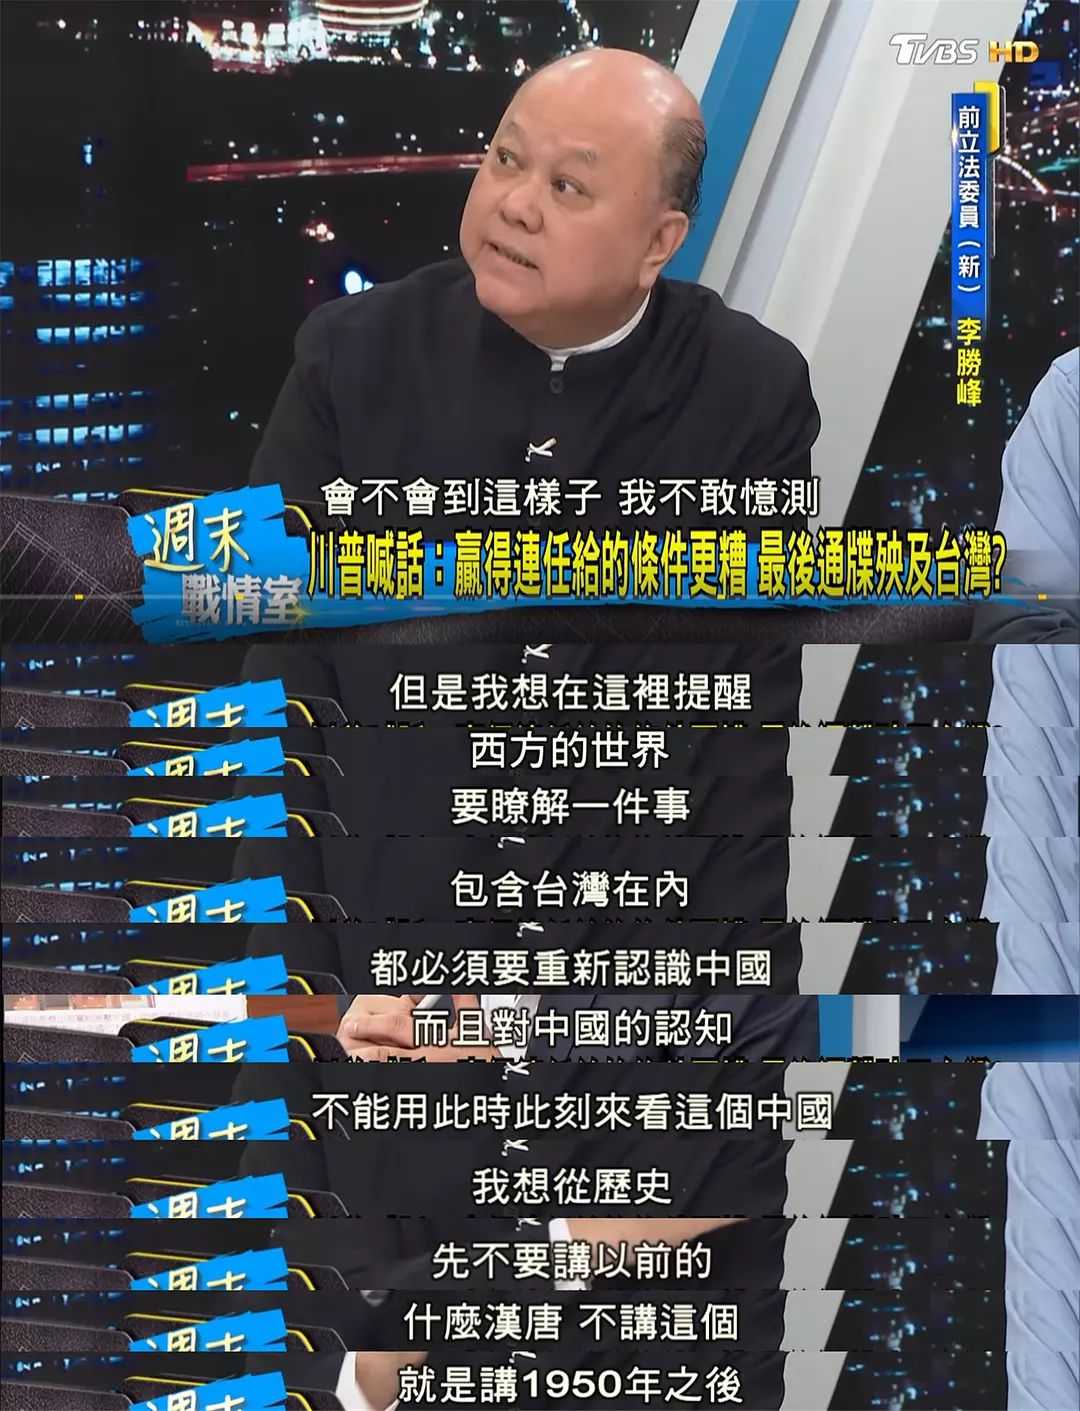 给大家看看台湾新党人士李胜峰怎么讲的: 少康战情室2019年合集